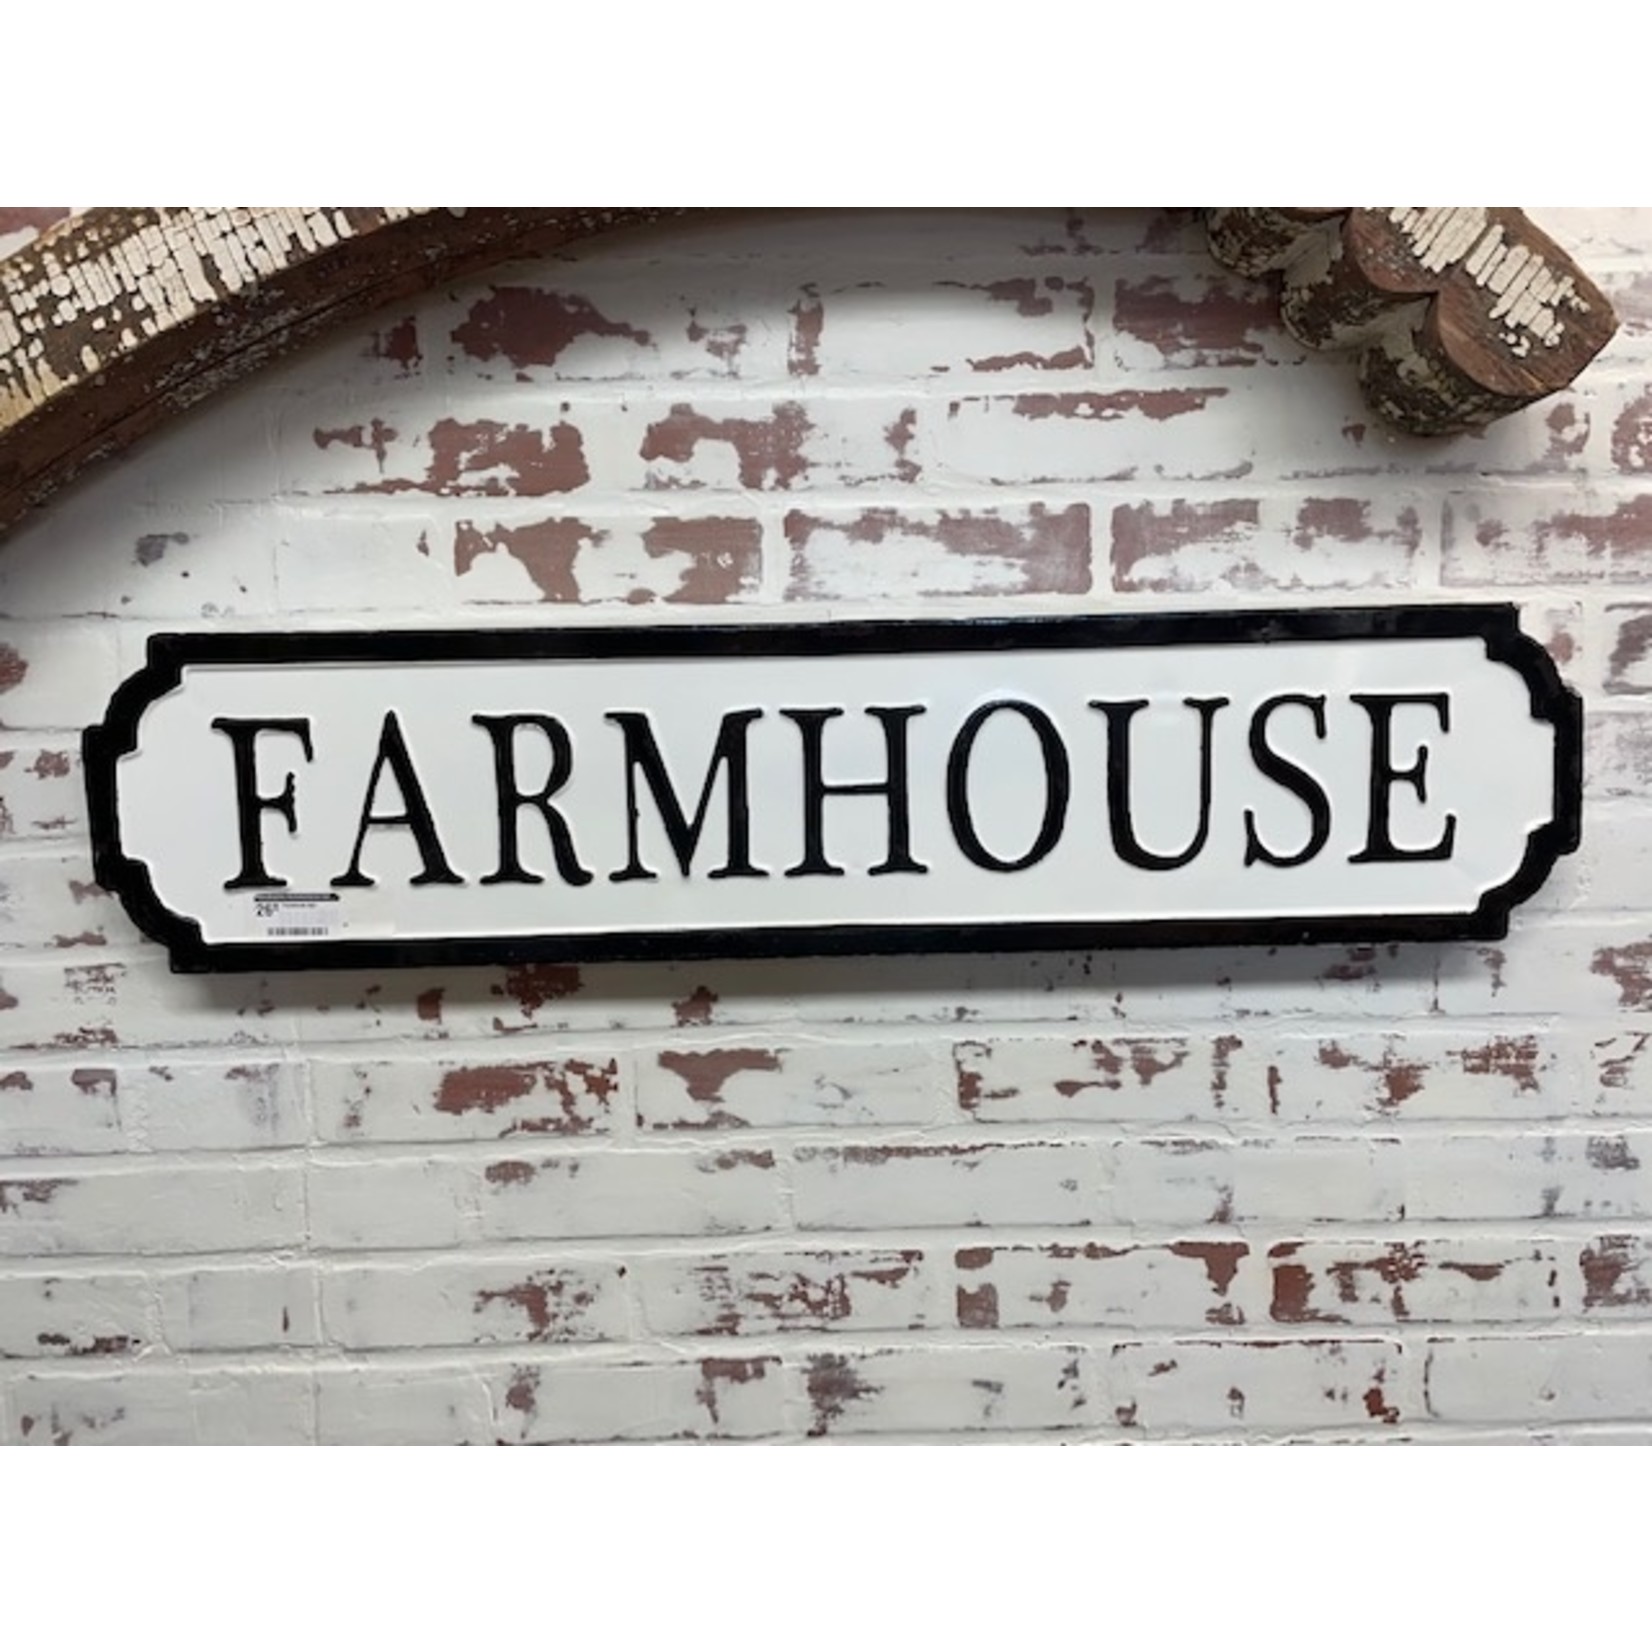 W.A.S Farmhouse sign